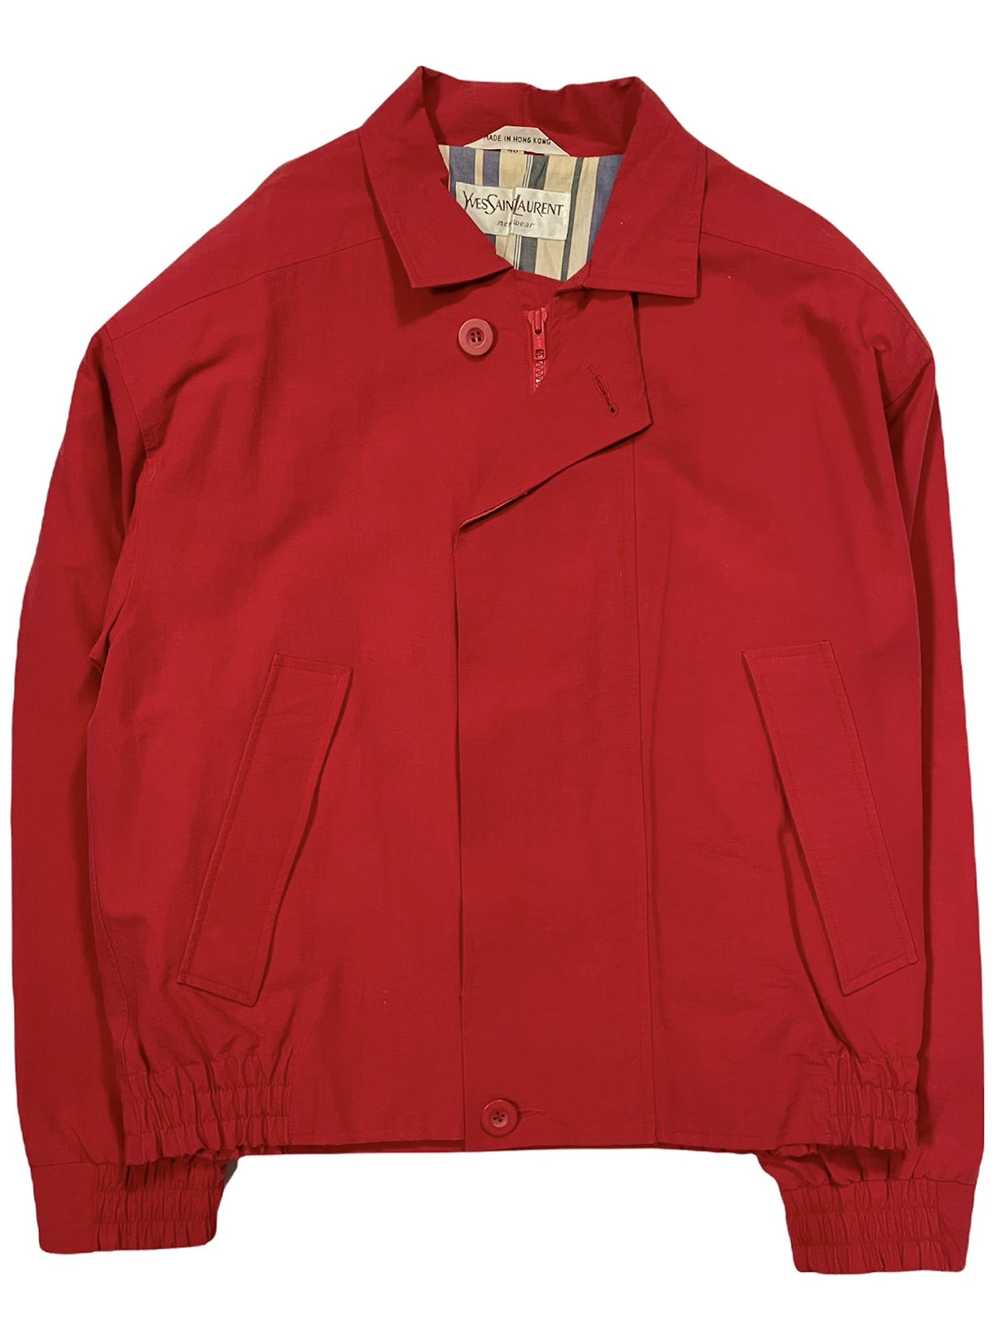 Vintage × Yves Saint Laurent Field Jacket - image 1